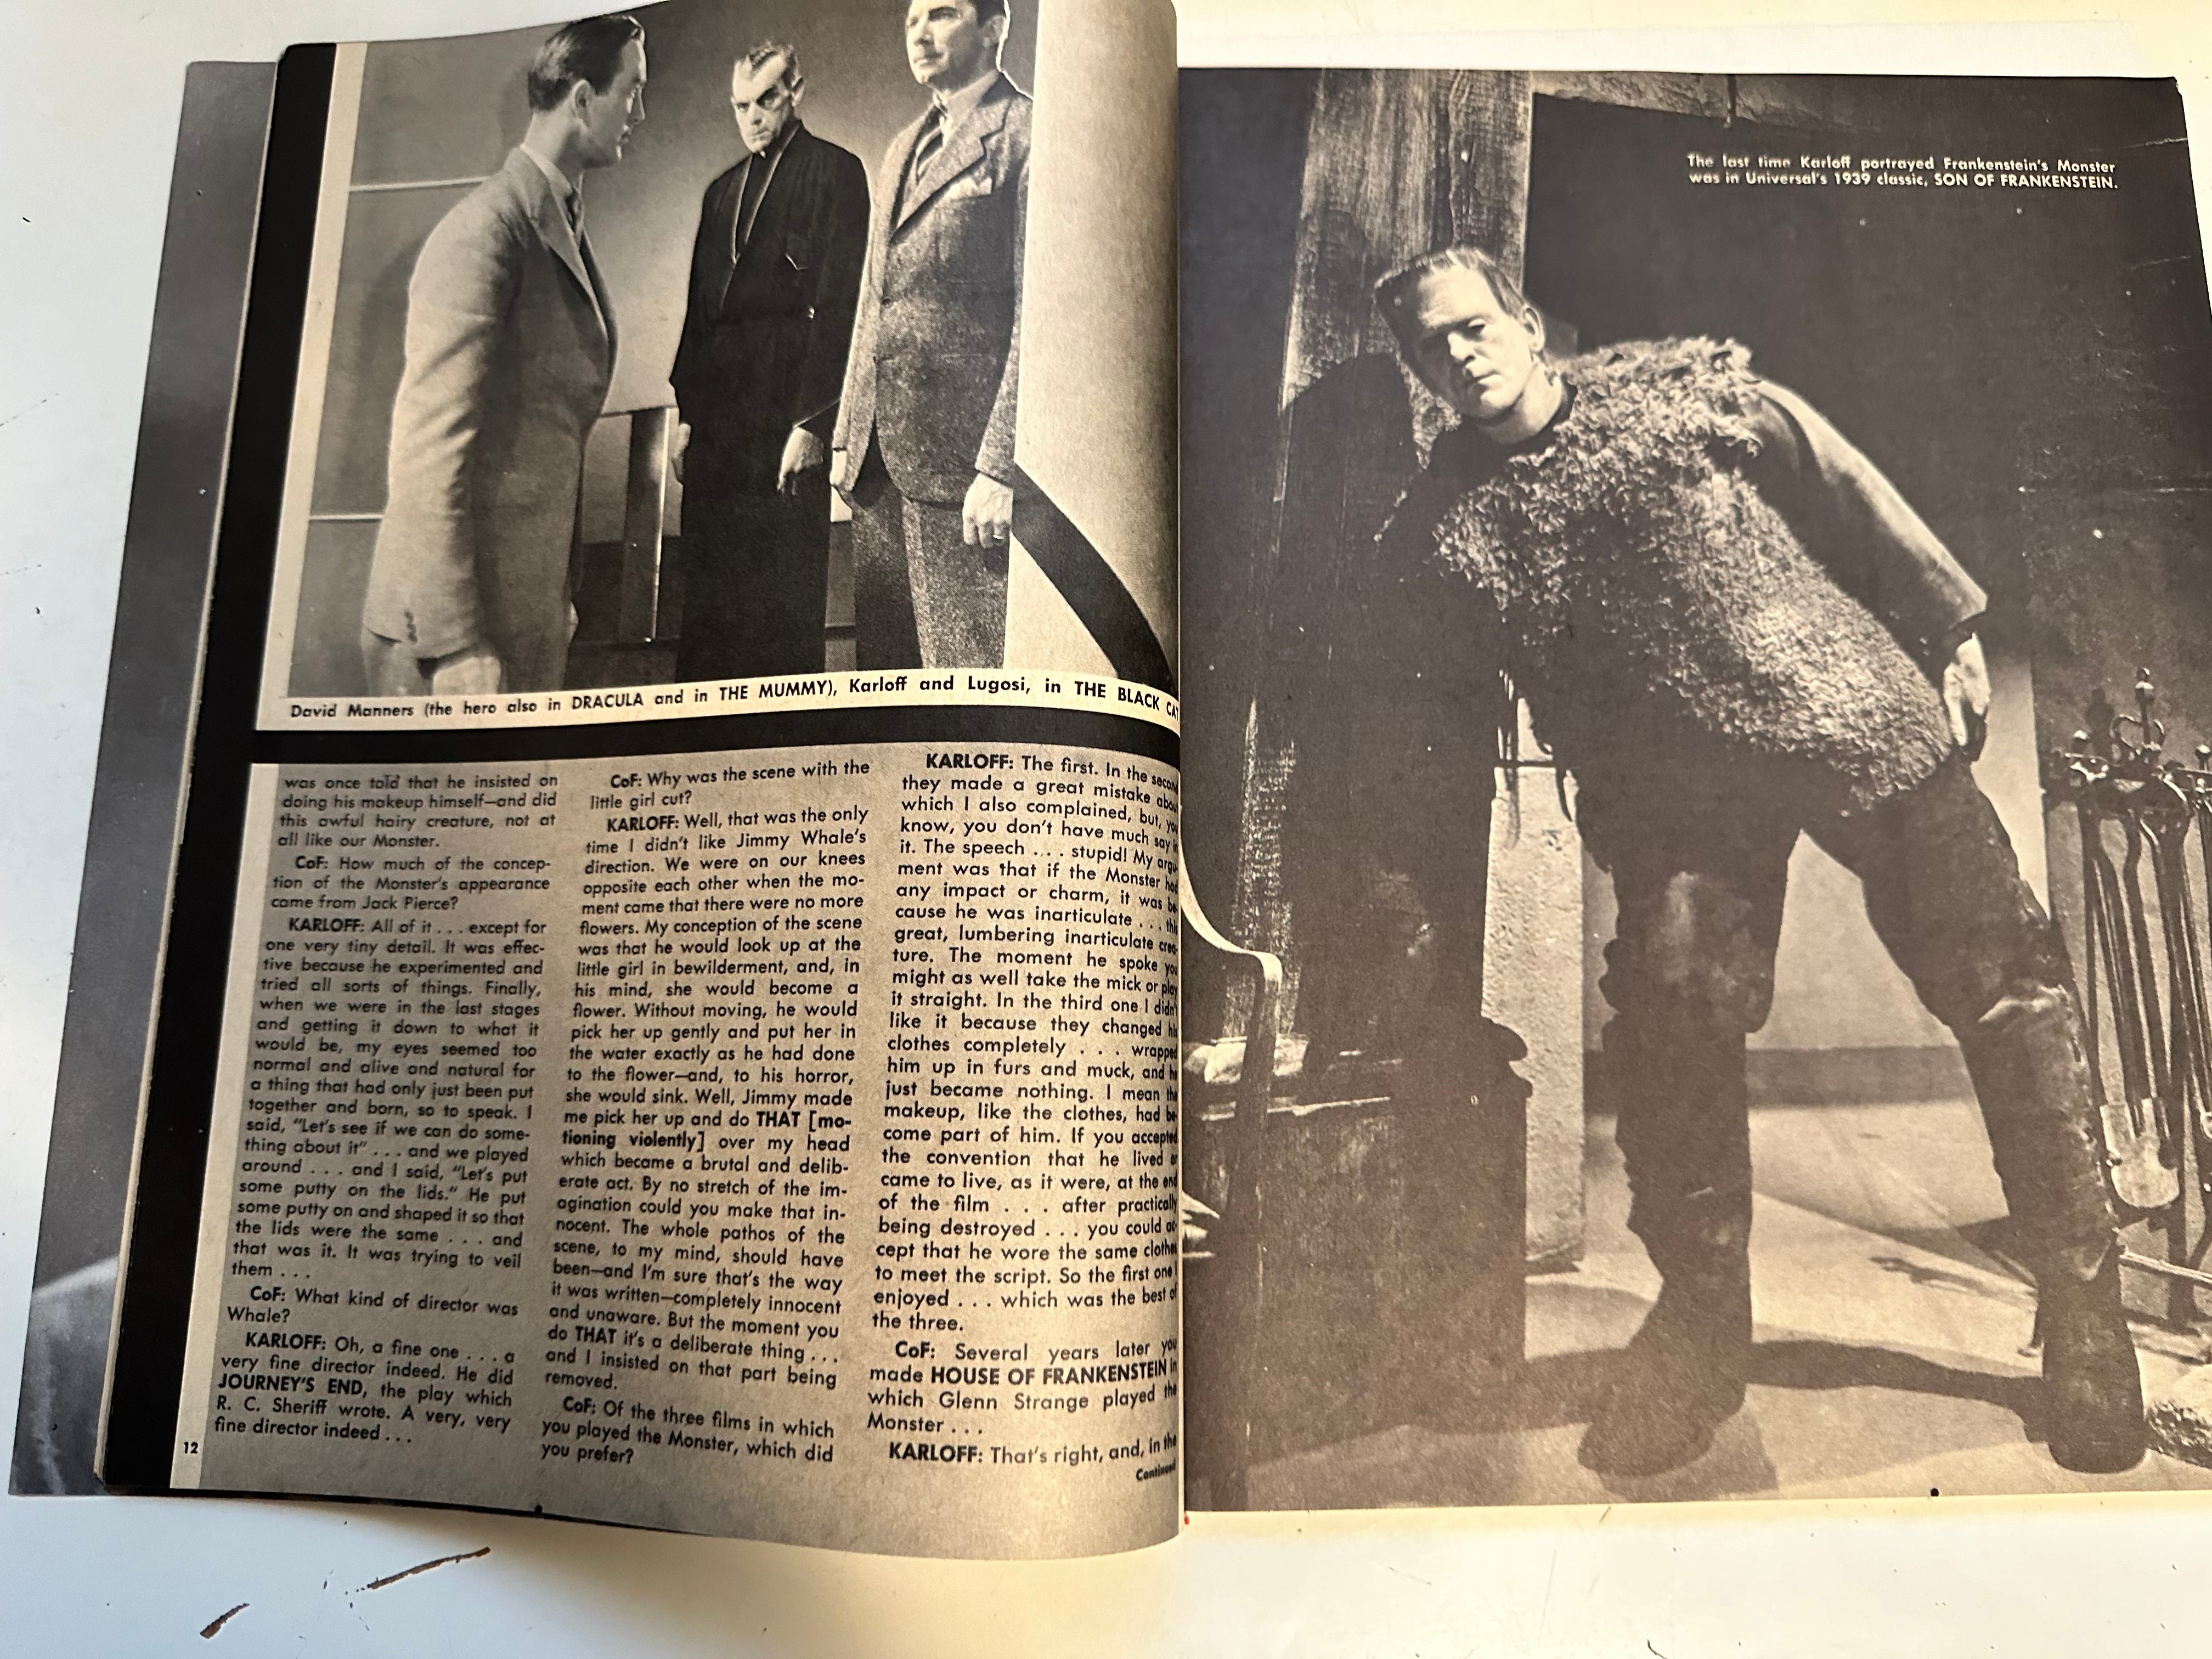 Castle of Frankenstein movie/TV magazine Batman issue 1966